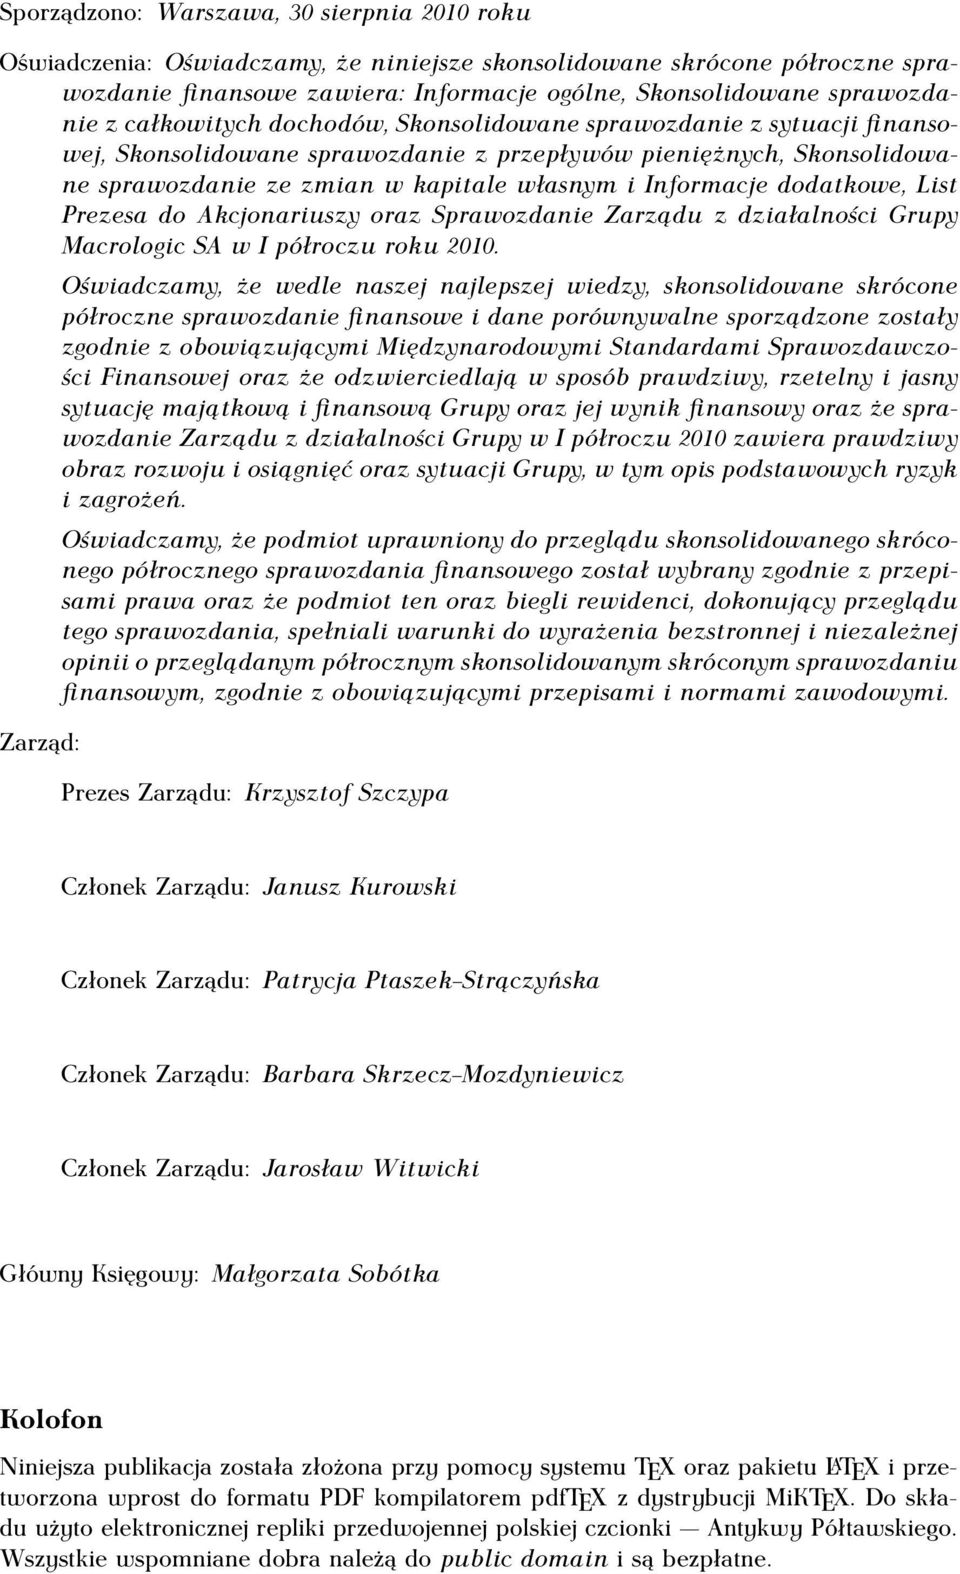 dodatkowe, List Prezesa do Akcjonariuszy oraz Sprawozdanie Zarządu z działalności Grupy Macrologic SA w I półroczu roku 2010.